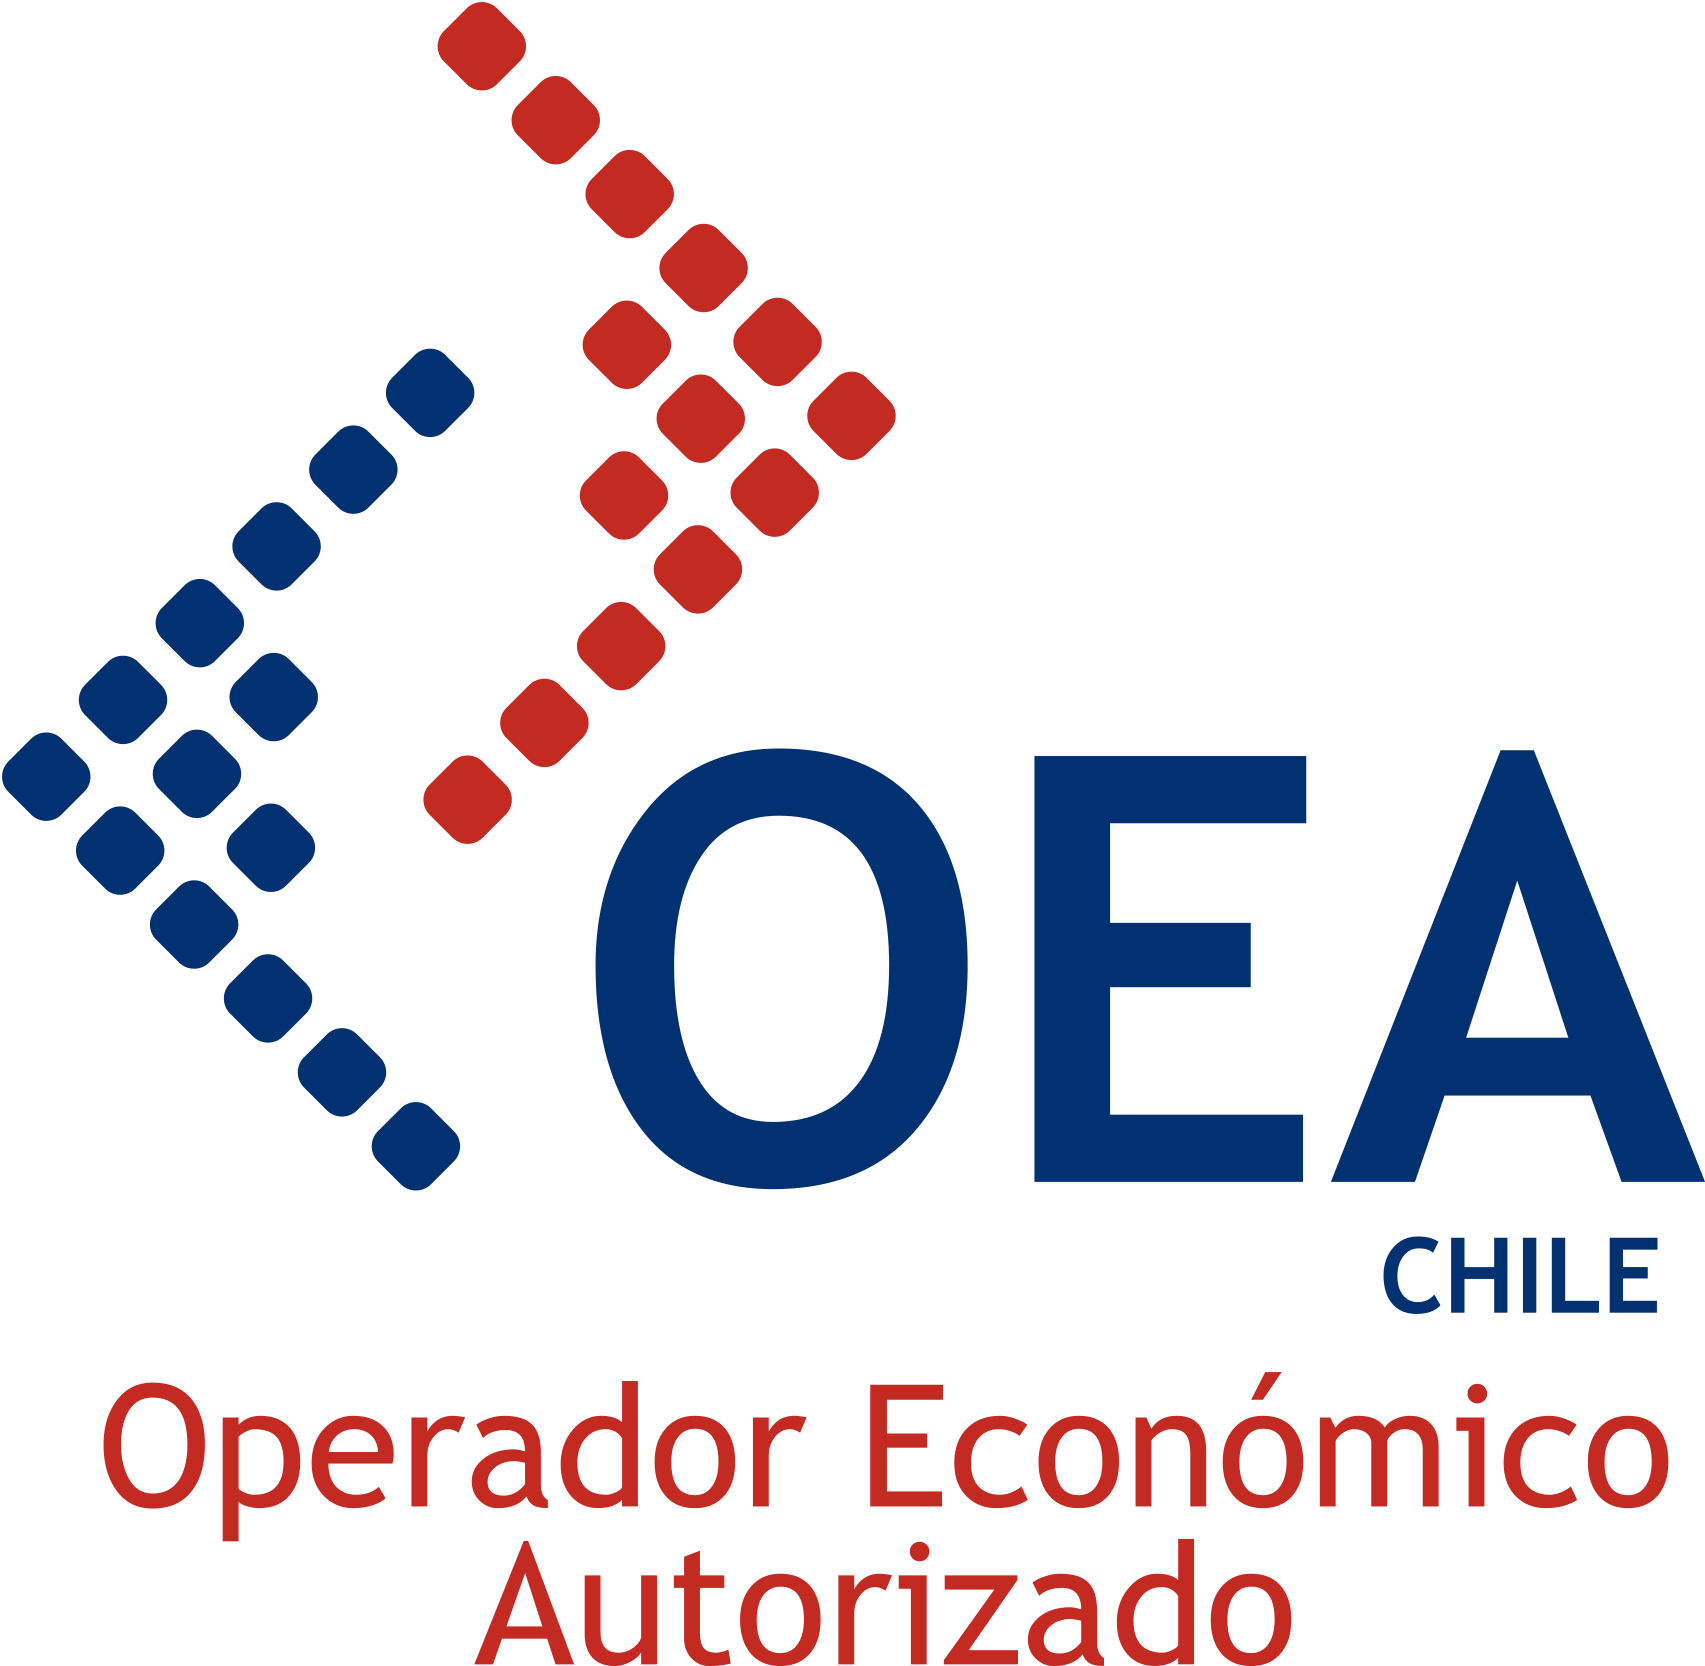 Operador Económico Autorizado Chile